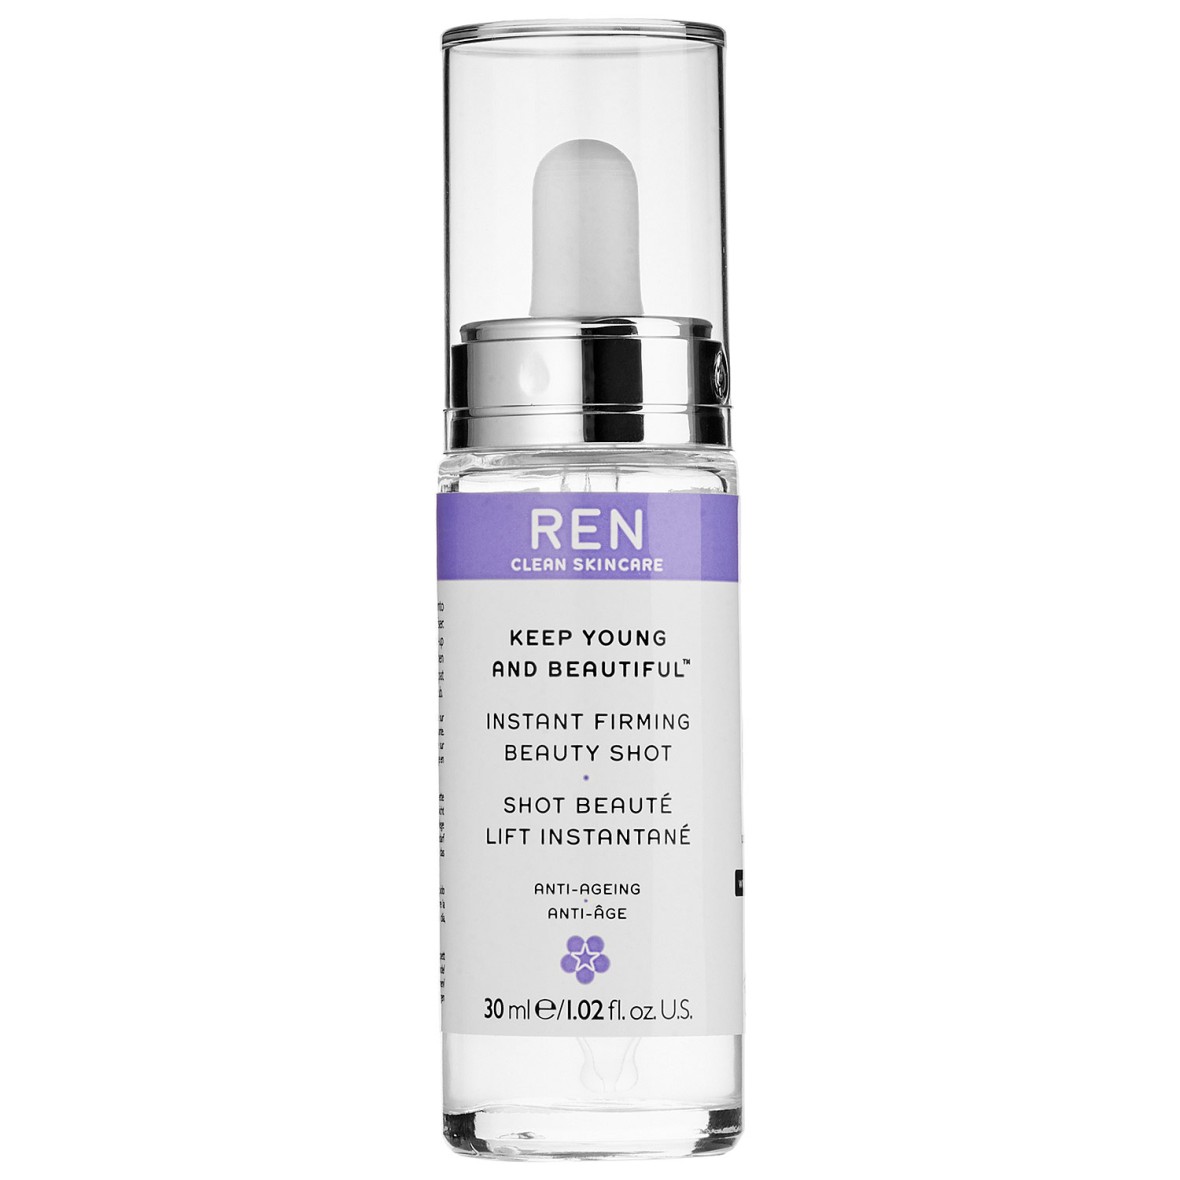 Ren Beauty shot serum